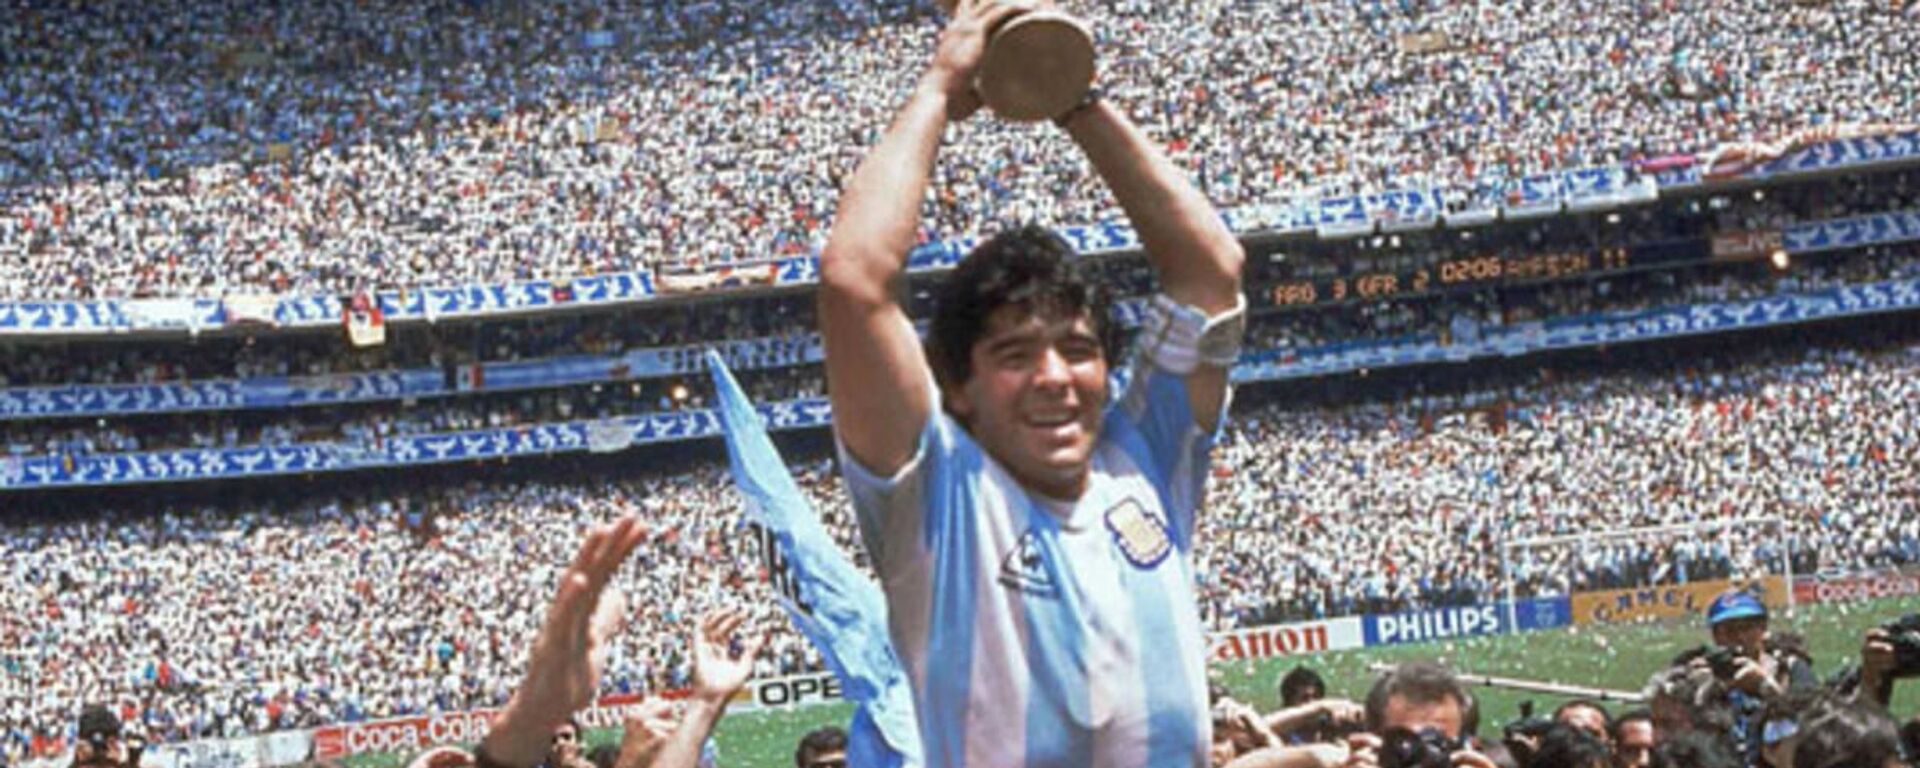 Diego Maradona, oyun tarzıyla futbolseverlerin sevgilisi haline gelmişti. - Sputnik Türkiye, 1920, 30.11.2020